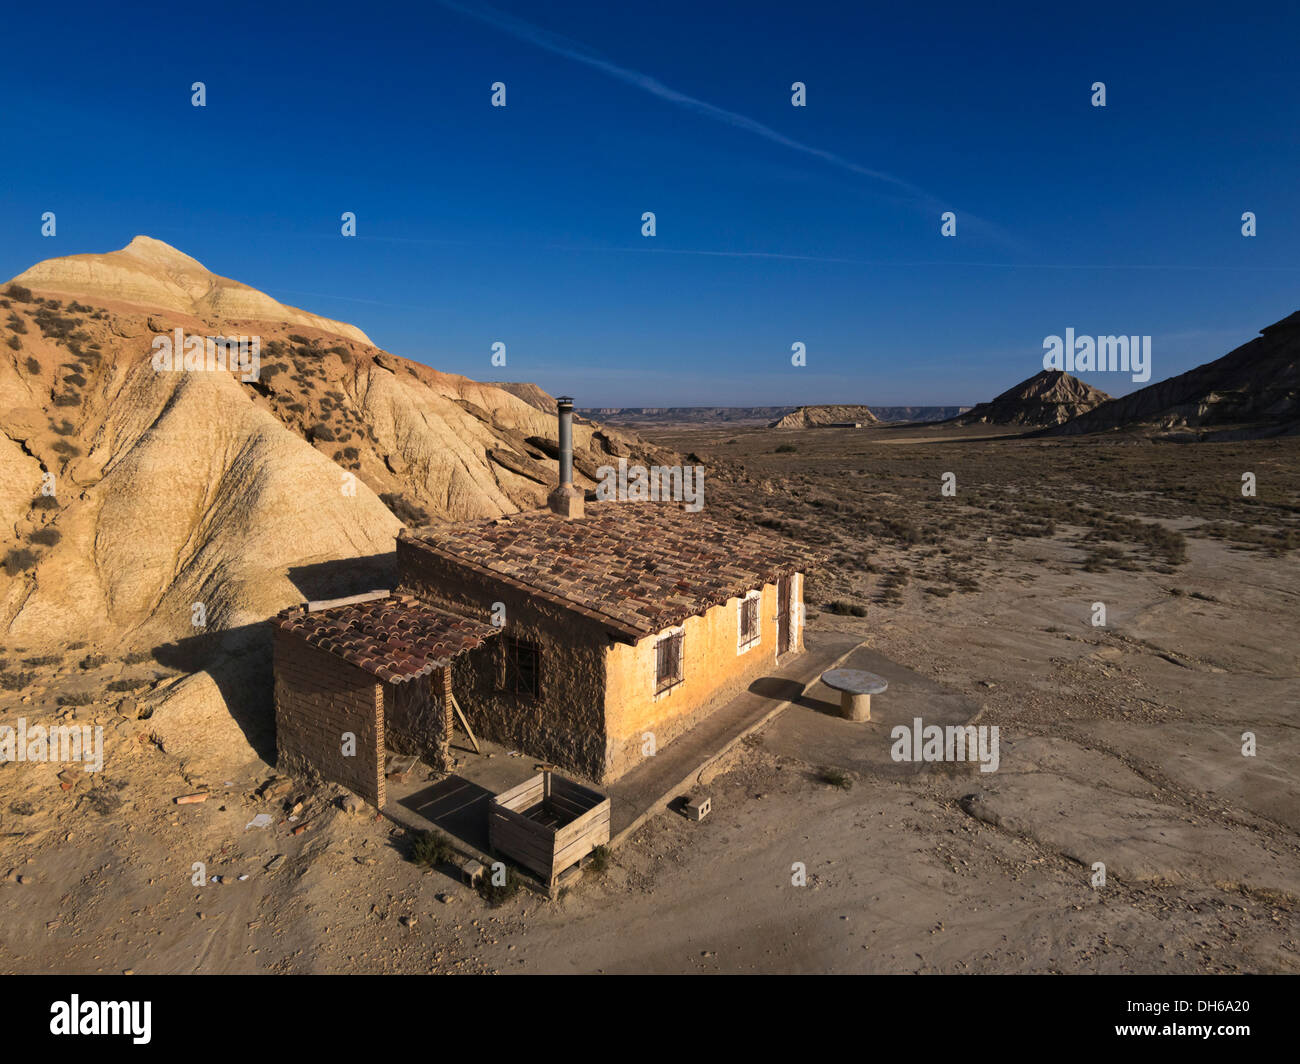 Simple cabaña de pastores, característico paisaje extraño de arcilla ocre, semidesértica Bardenas Reales, Reserva de la Biosfera de la UNESCO Foto de stock